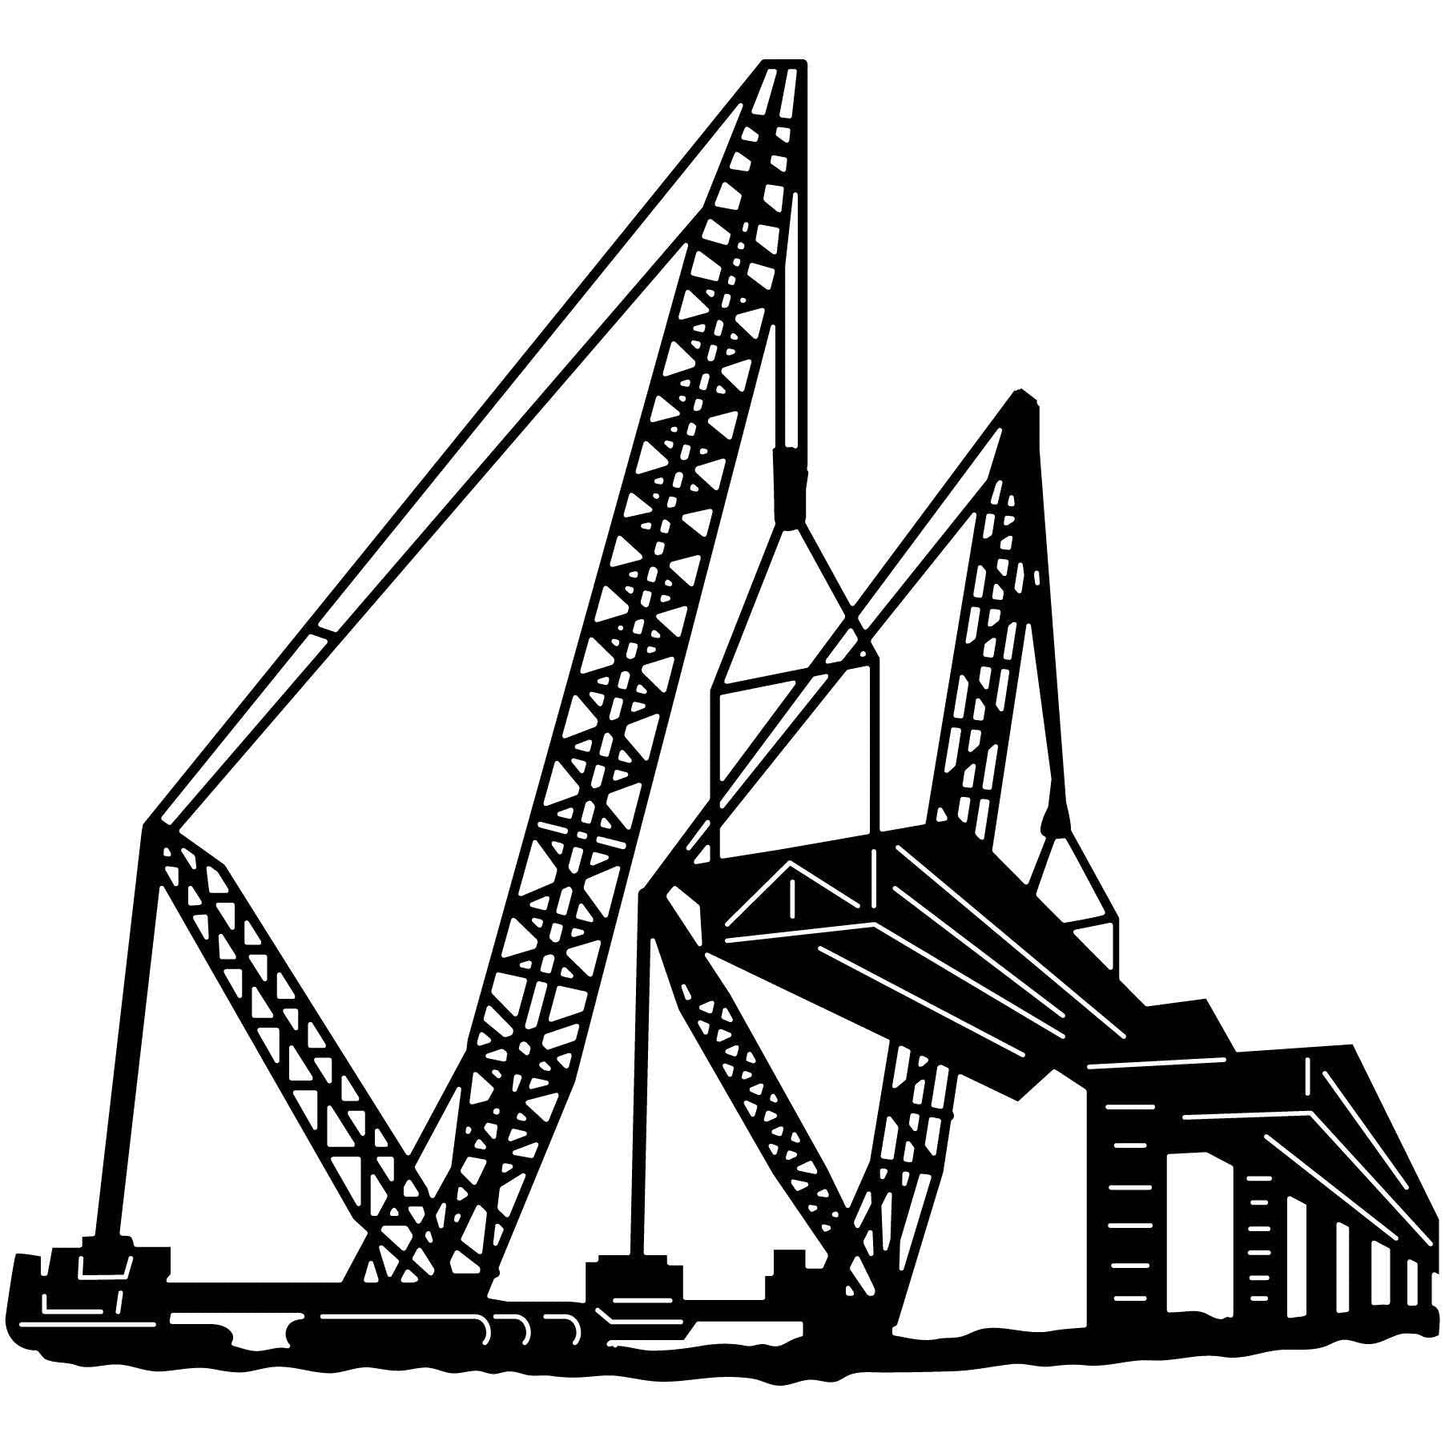 Cranes and Building Bridge Scene-DXFforCNC.com-DXF Files cut ready cnc machines